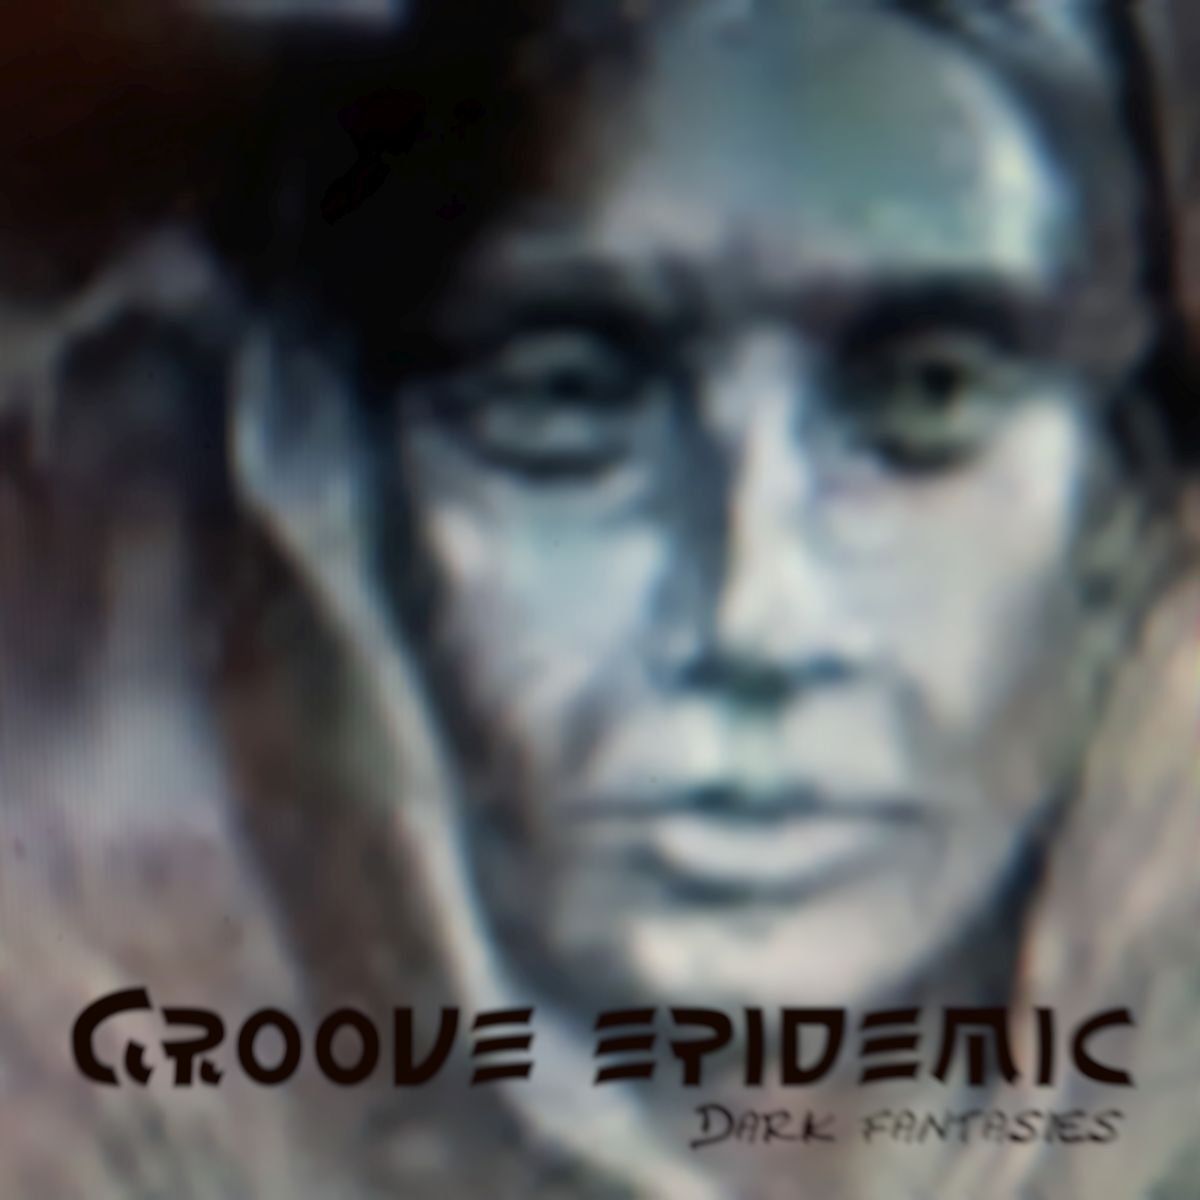 Groove epidemic-Dark fantasies[TAMU145]